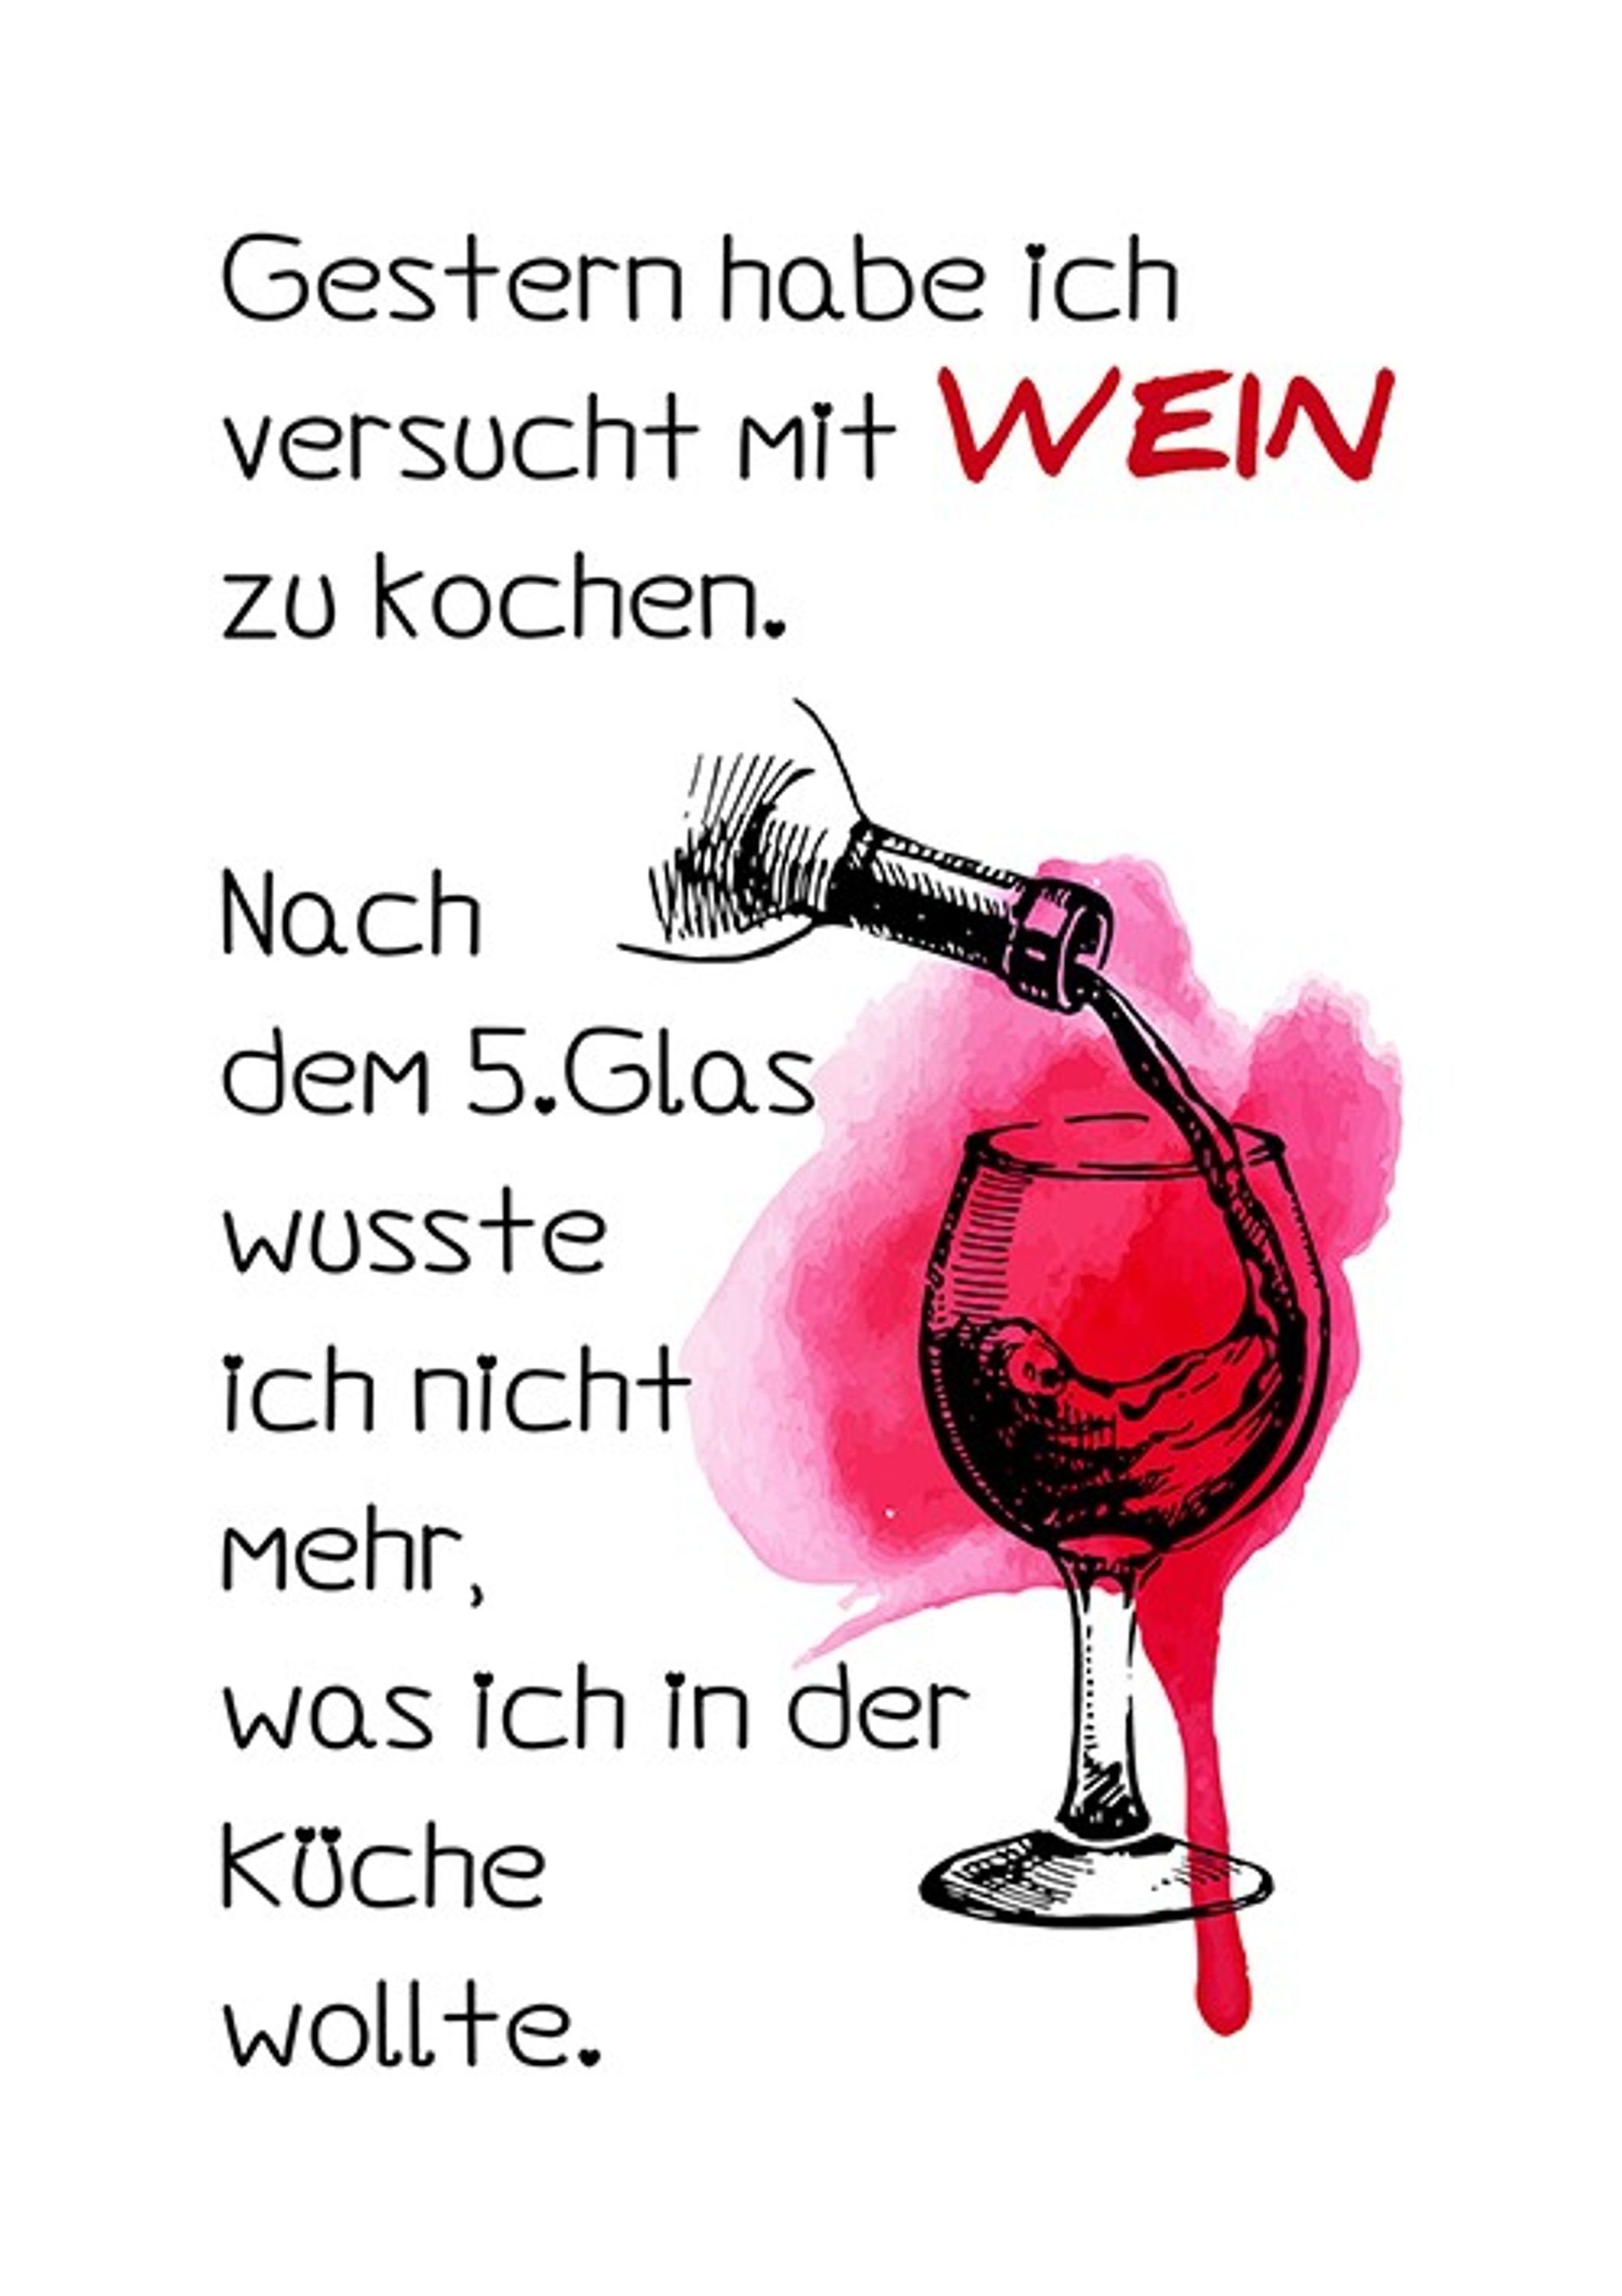 Bild Poster Wein mit Wandbild Wein, und Küchenbild Poster lustige Spruch Sprüche: artissimo Küche Zitate DinA4 lustiges